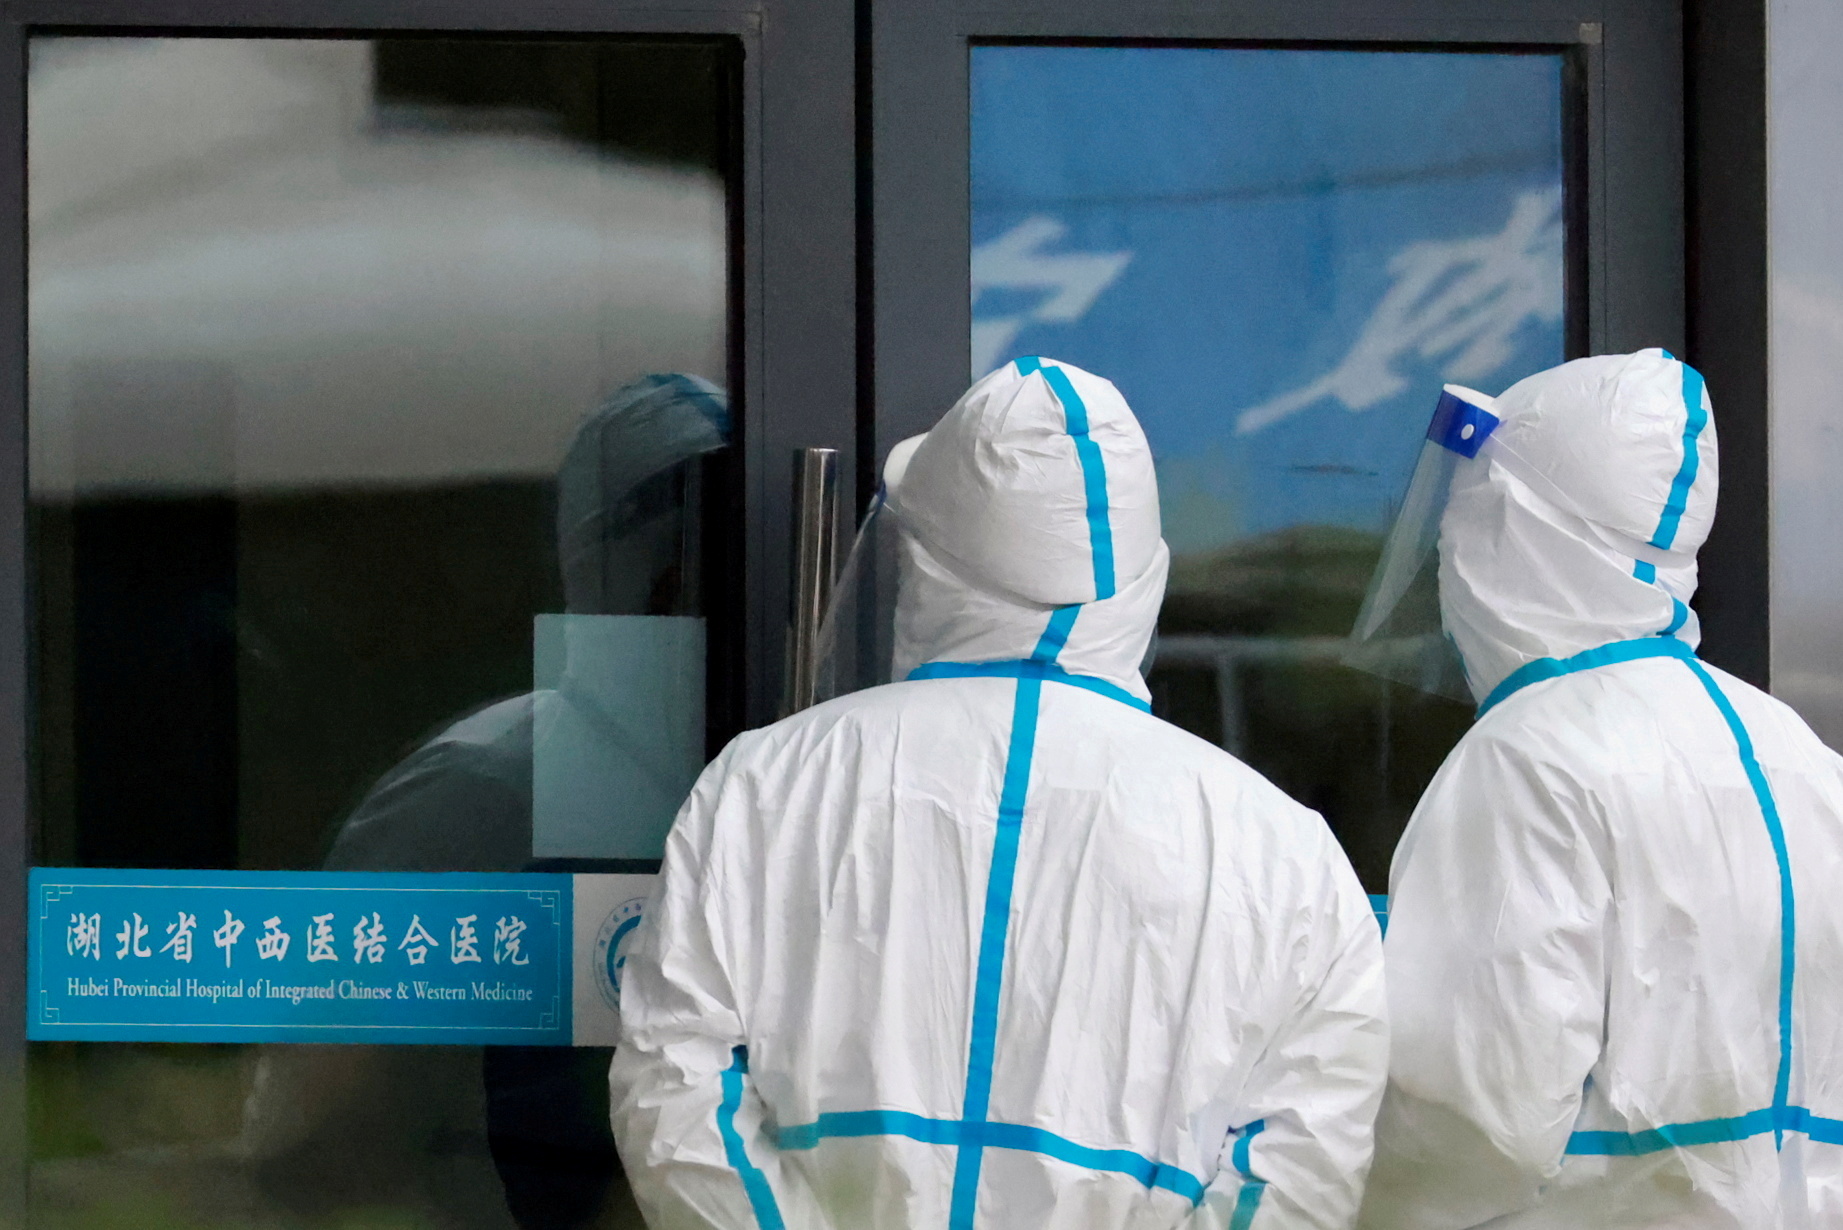 FOTO DE ARCHIVO: Personas con trajes de protección se encuentran en el Hospital Provincial de Medicina China y Occidental Integrada de Hubei, en Wuhan, Provincia de Hubei, China, 29 de enero de 2021. REUTERS / Thomas Peter